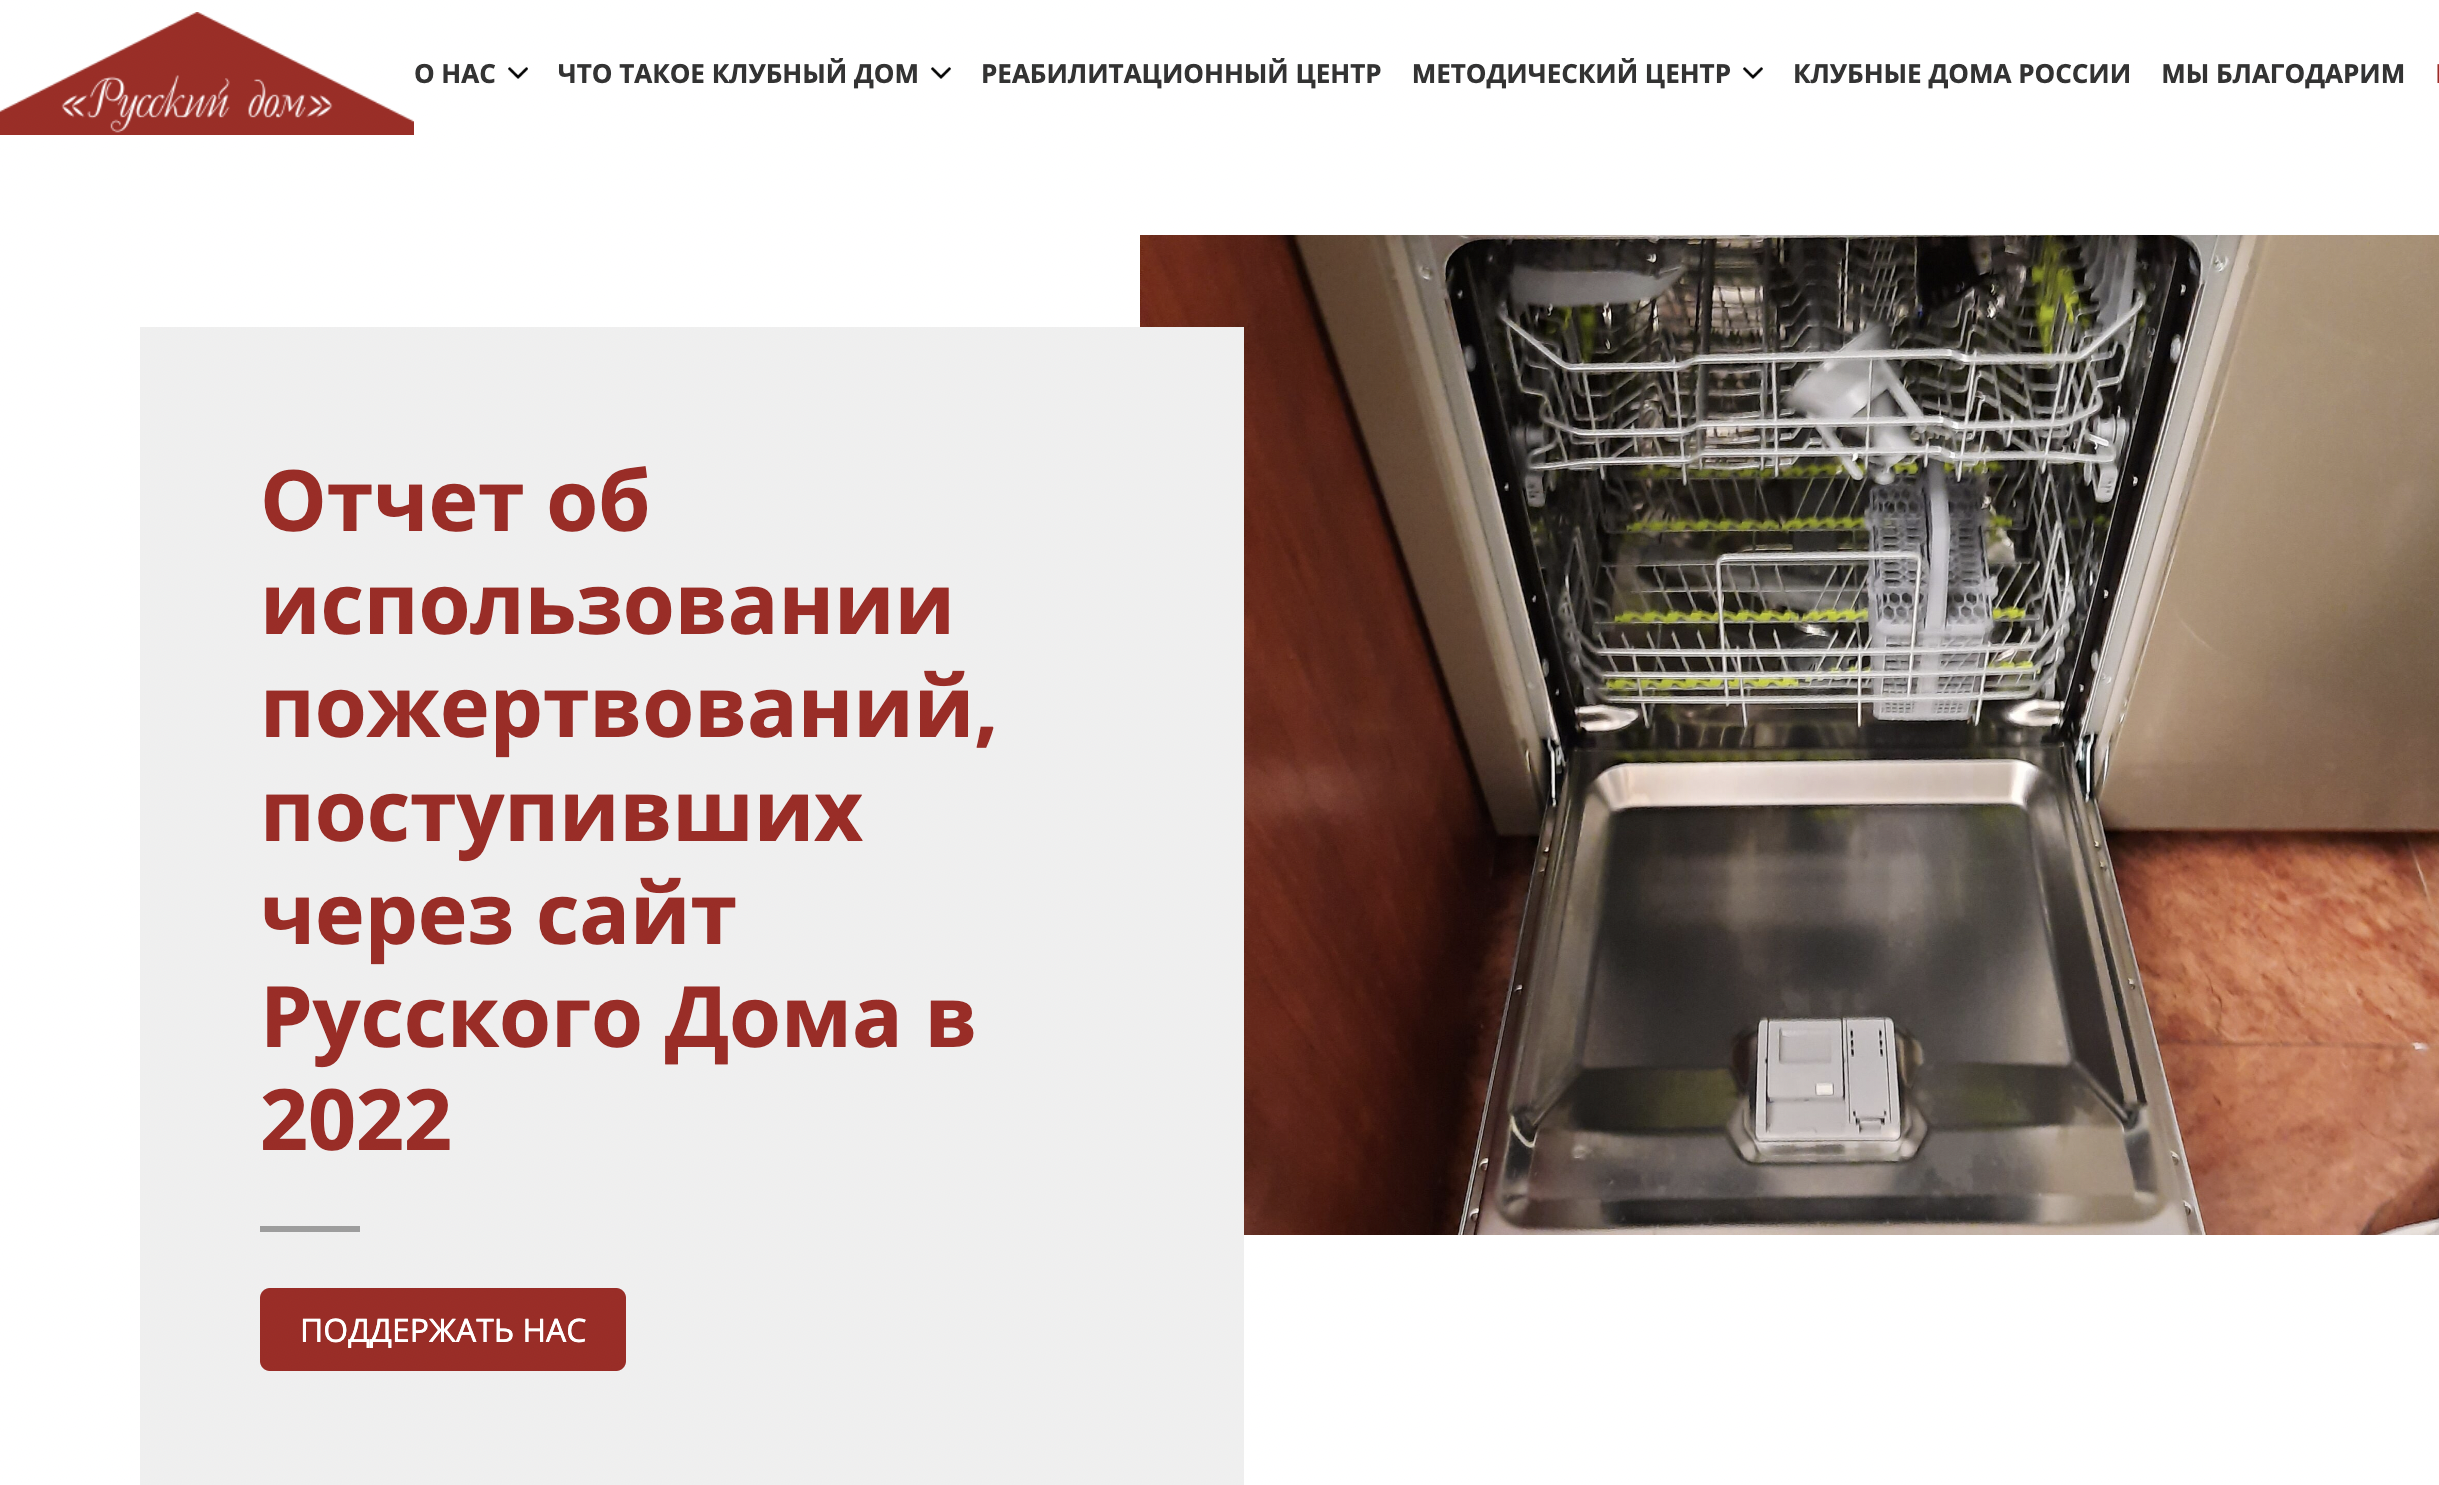 Отчет об использовании пожертвований, поступивших через сайт Русского Дома в 2022 году